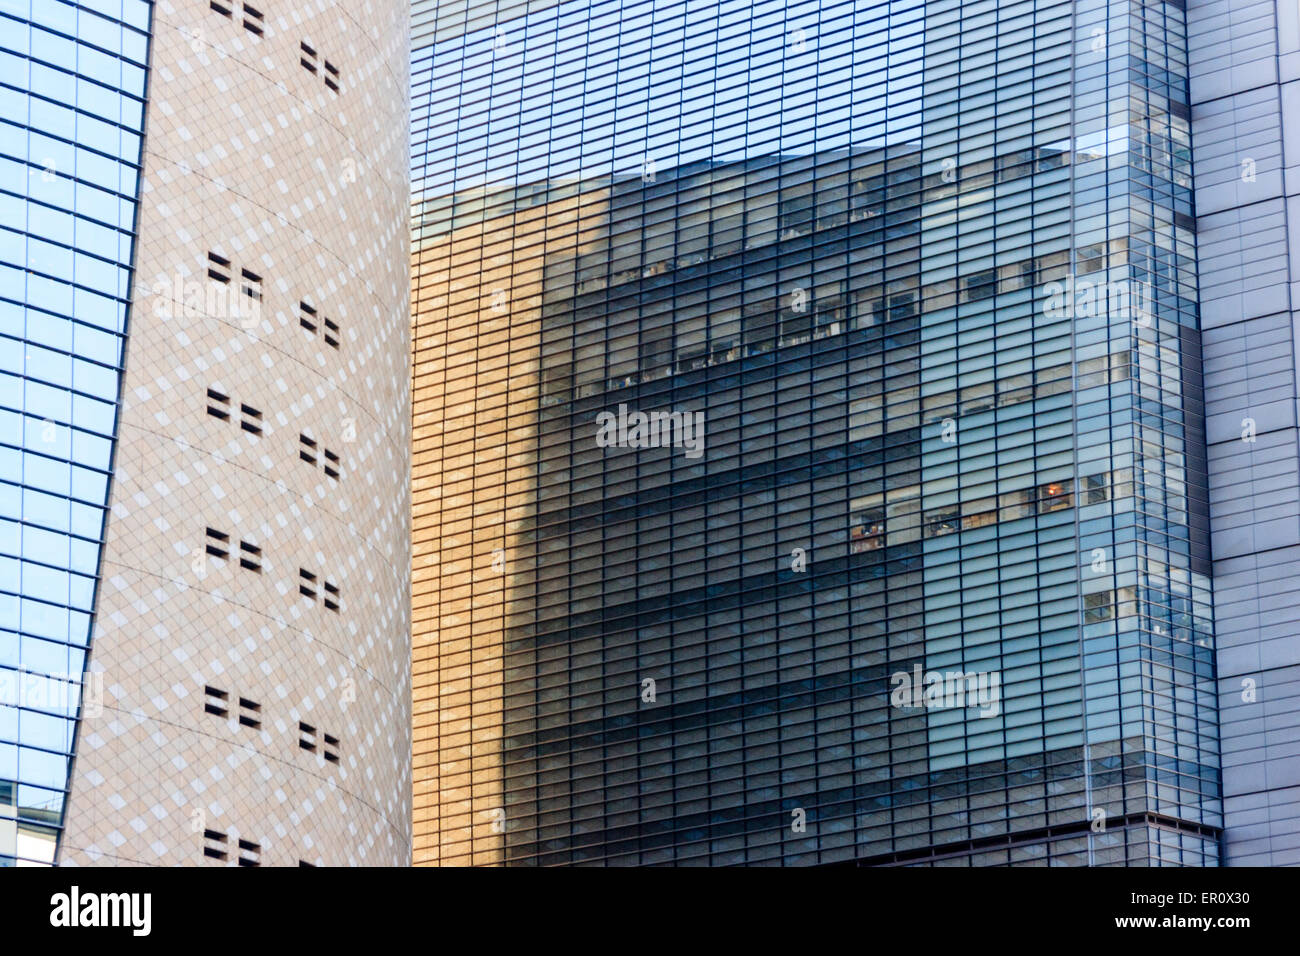 Primo piano dell'edificio della sede centrale di Osaka, NHK, l'emittente giapponese. Edificio a globo di vetro tra due alte torri di vetro e mattoni. Foto Stock